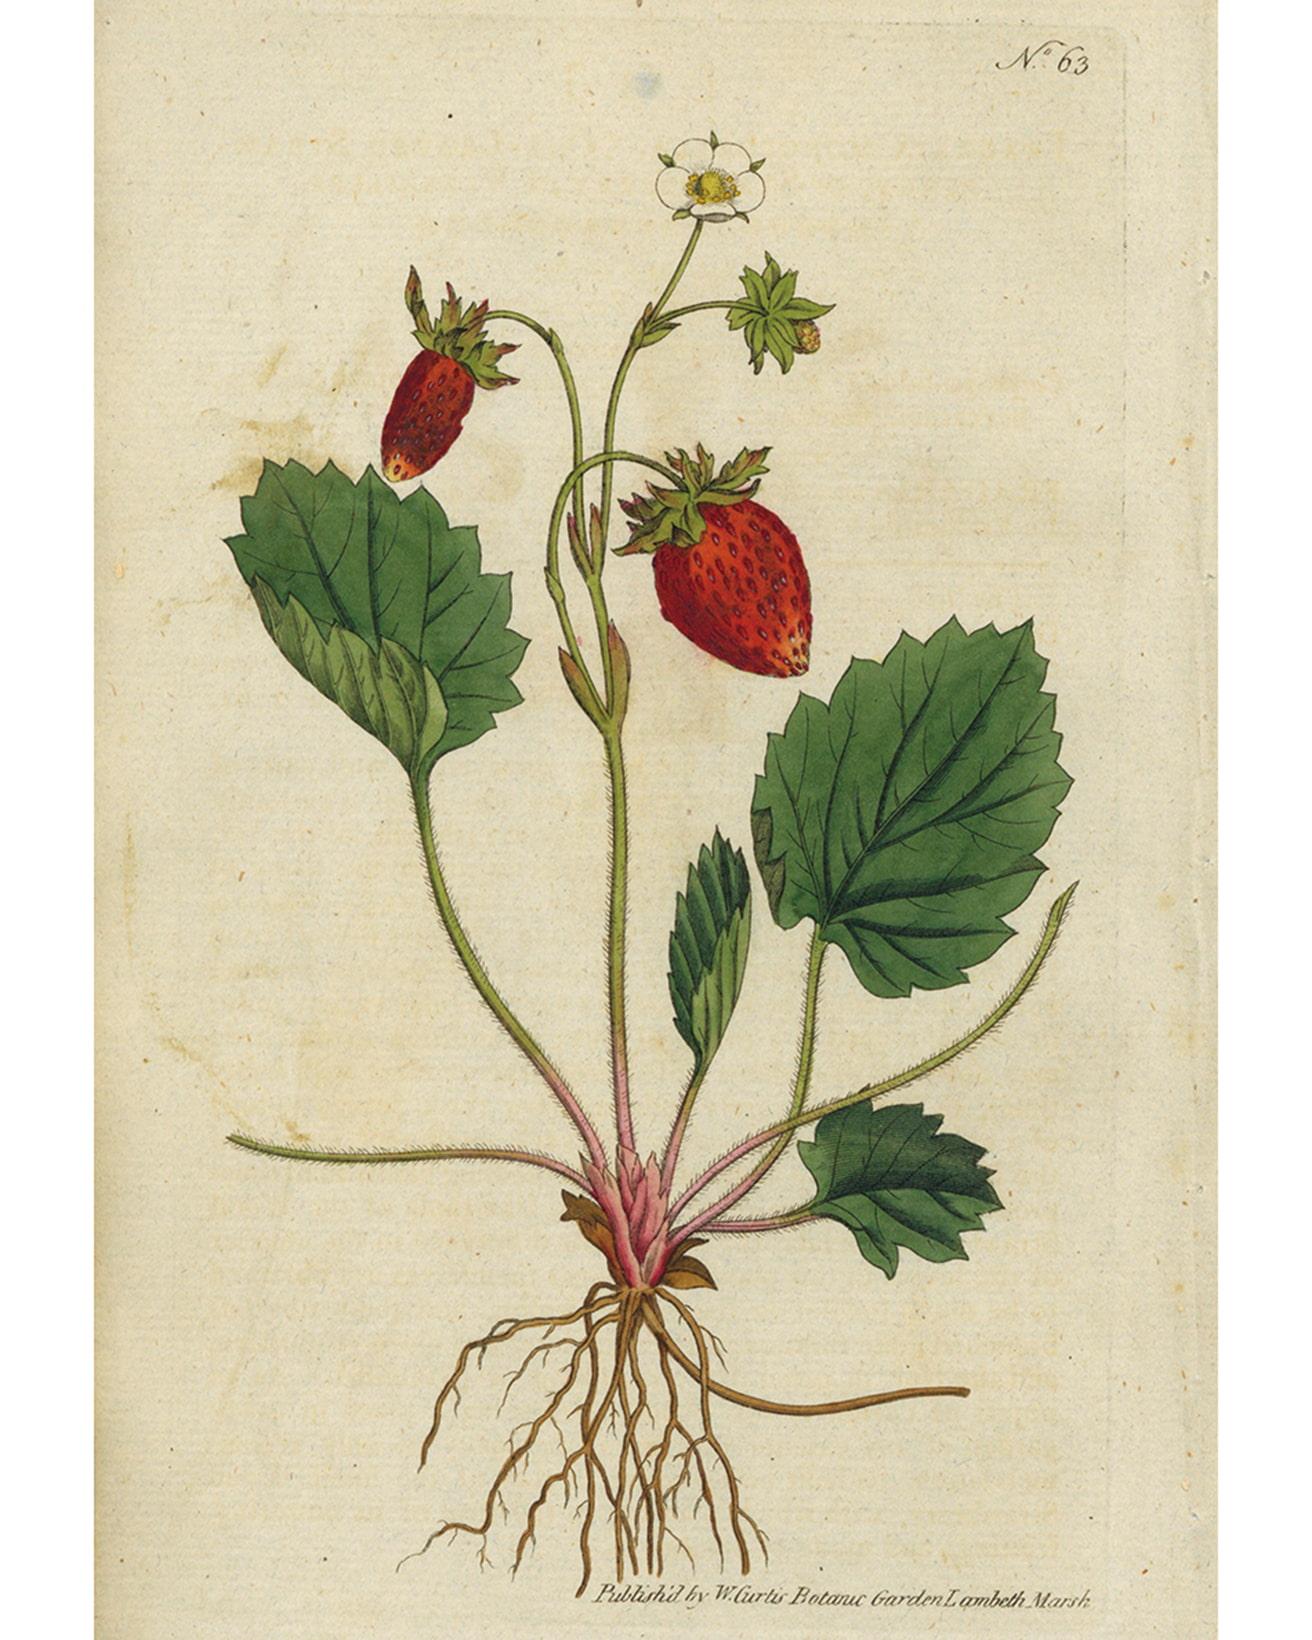 作者不明《イチゴ「ストロベリー・オブ・ヴェルサイユ」》1788年　Photo Brain Trust inc.　キリスト教では聖母マリアが好んだとされるイチゴは、ヨーロッパでは古くから親しまれている果物の一つ。白い花や首を垂れる果実から連想される「純潔」や「恭順」のイメージが強く、シェイクスピアの『オセロ』では主人公オセロが貞淑な妻デズデモーナの浮気を疑う原因とあるハンカチにはイチゴ柄の刺繍が施されていた。イギリスではイチゴの葉を意匠した紋章を用いる貴族も多いし、園芸好きだったルイ14世はヴェルサイユ宮殿の隣にある菜園で好物のイチゴを栽培していた。